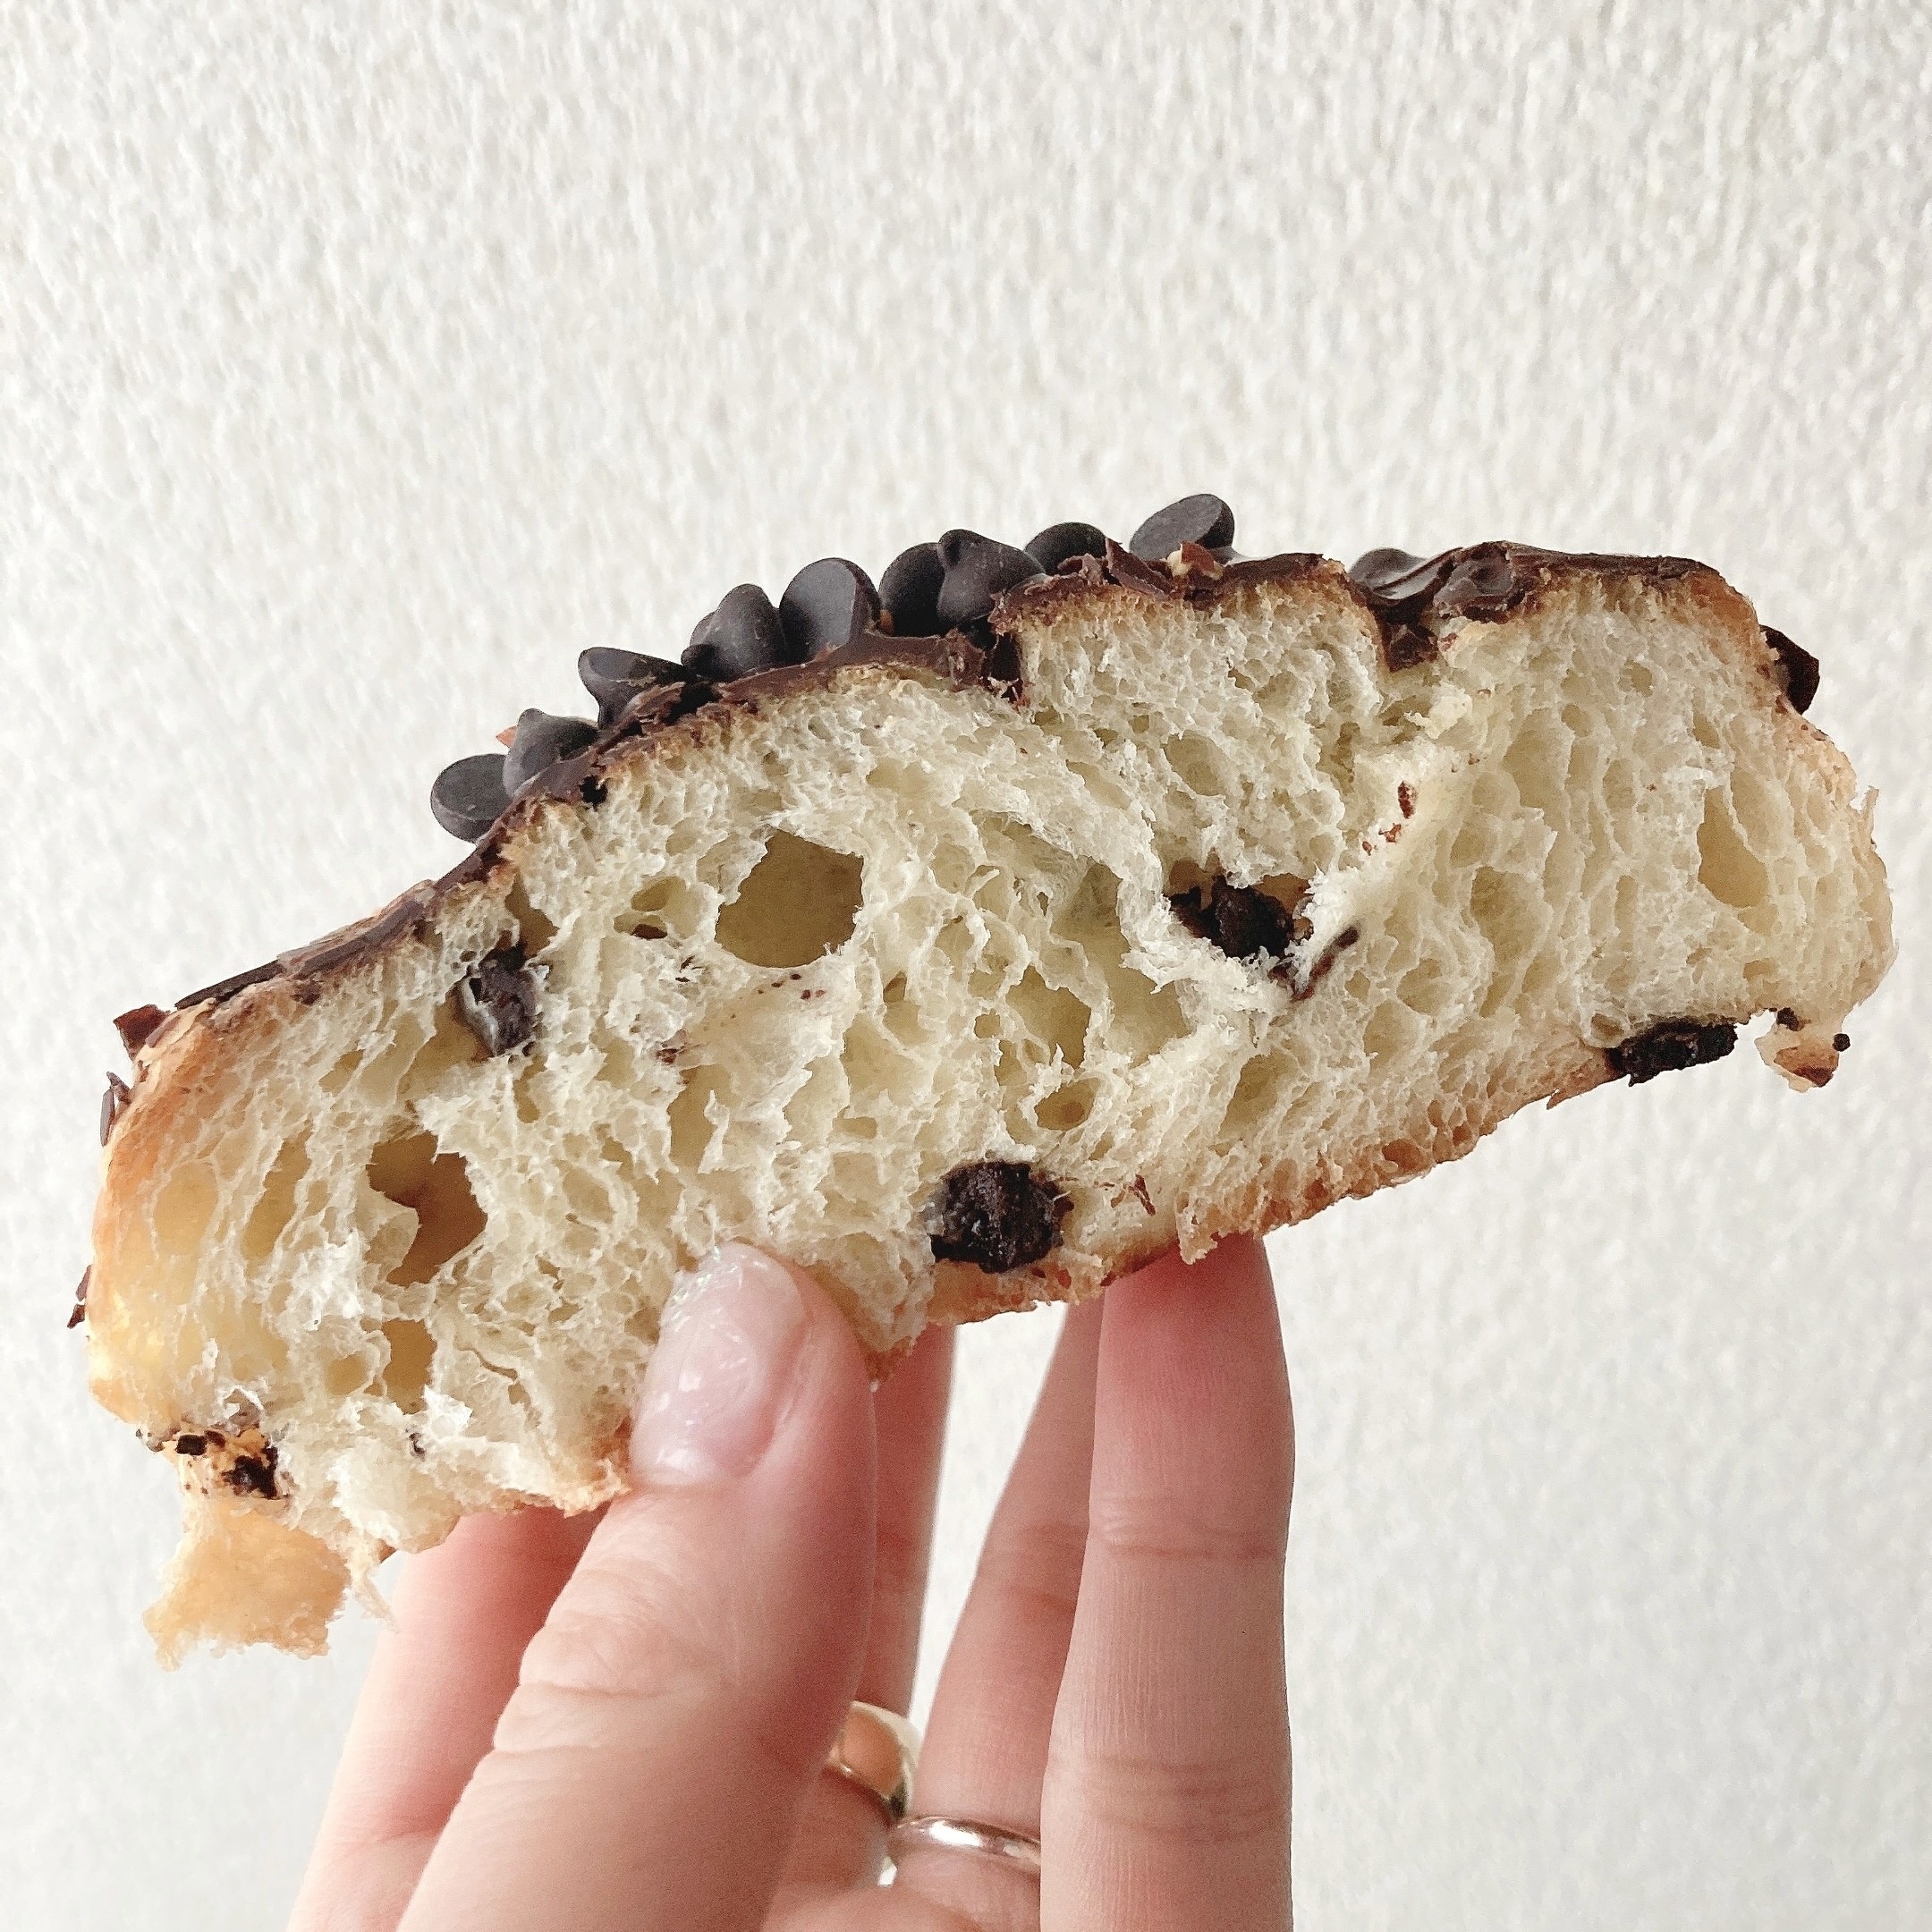 セブン-イレブンのオススメの菓子パン「アーモンドチョコデニッシュ」